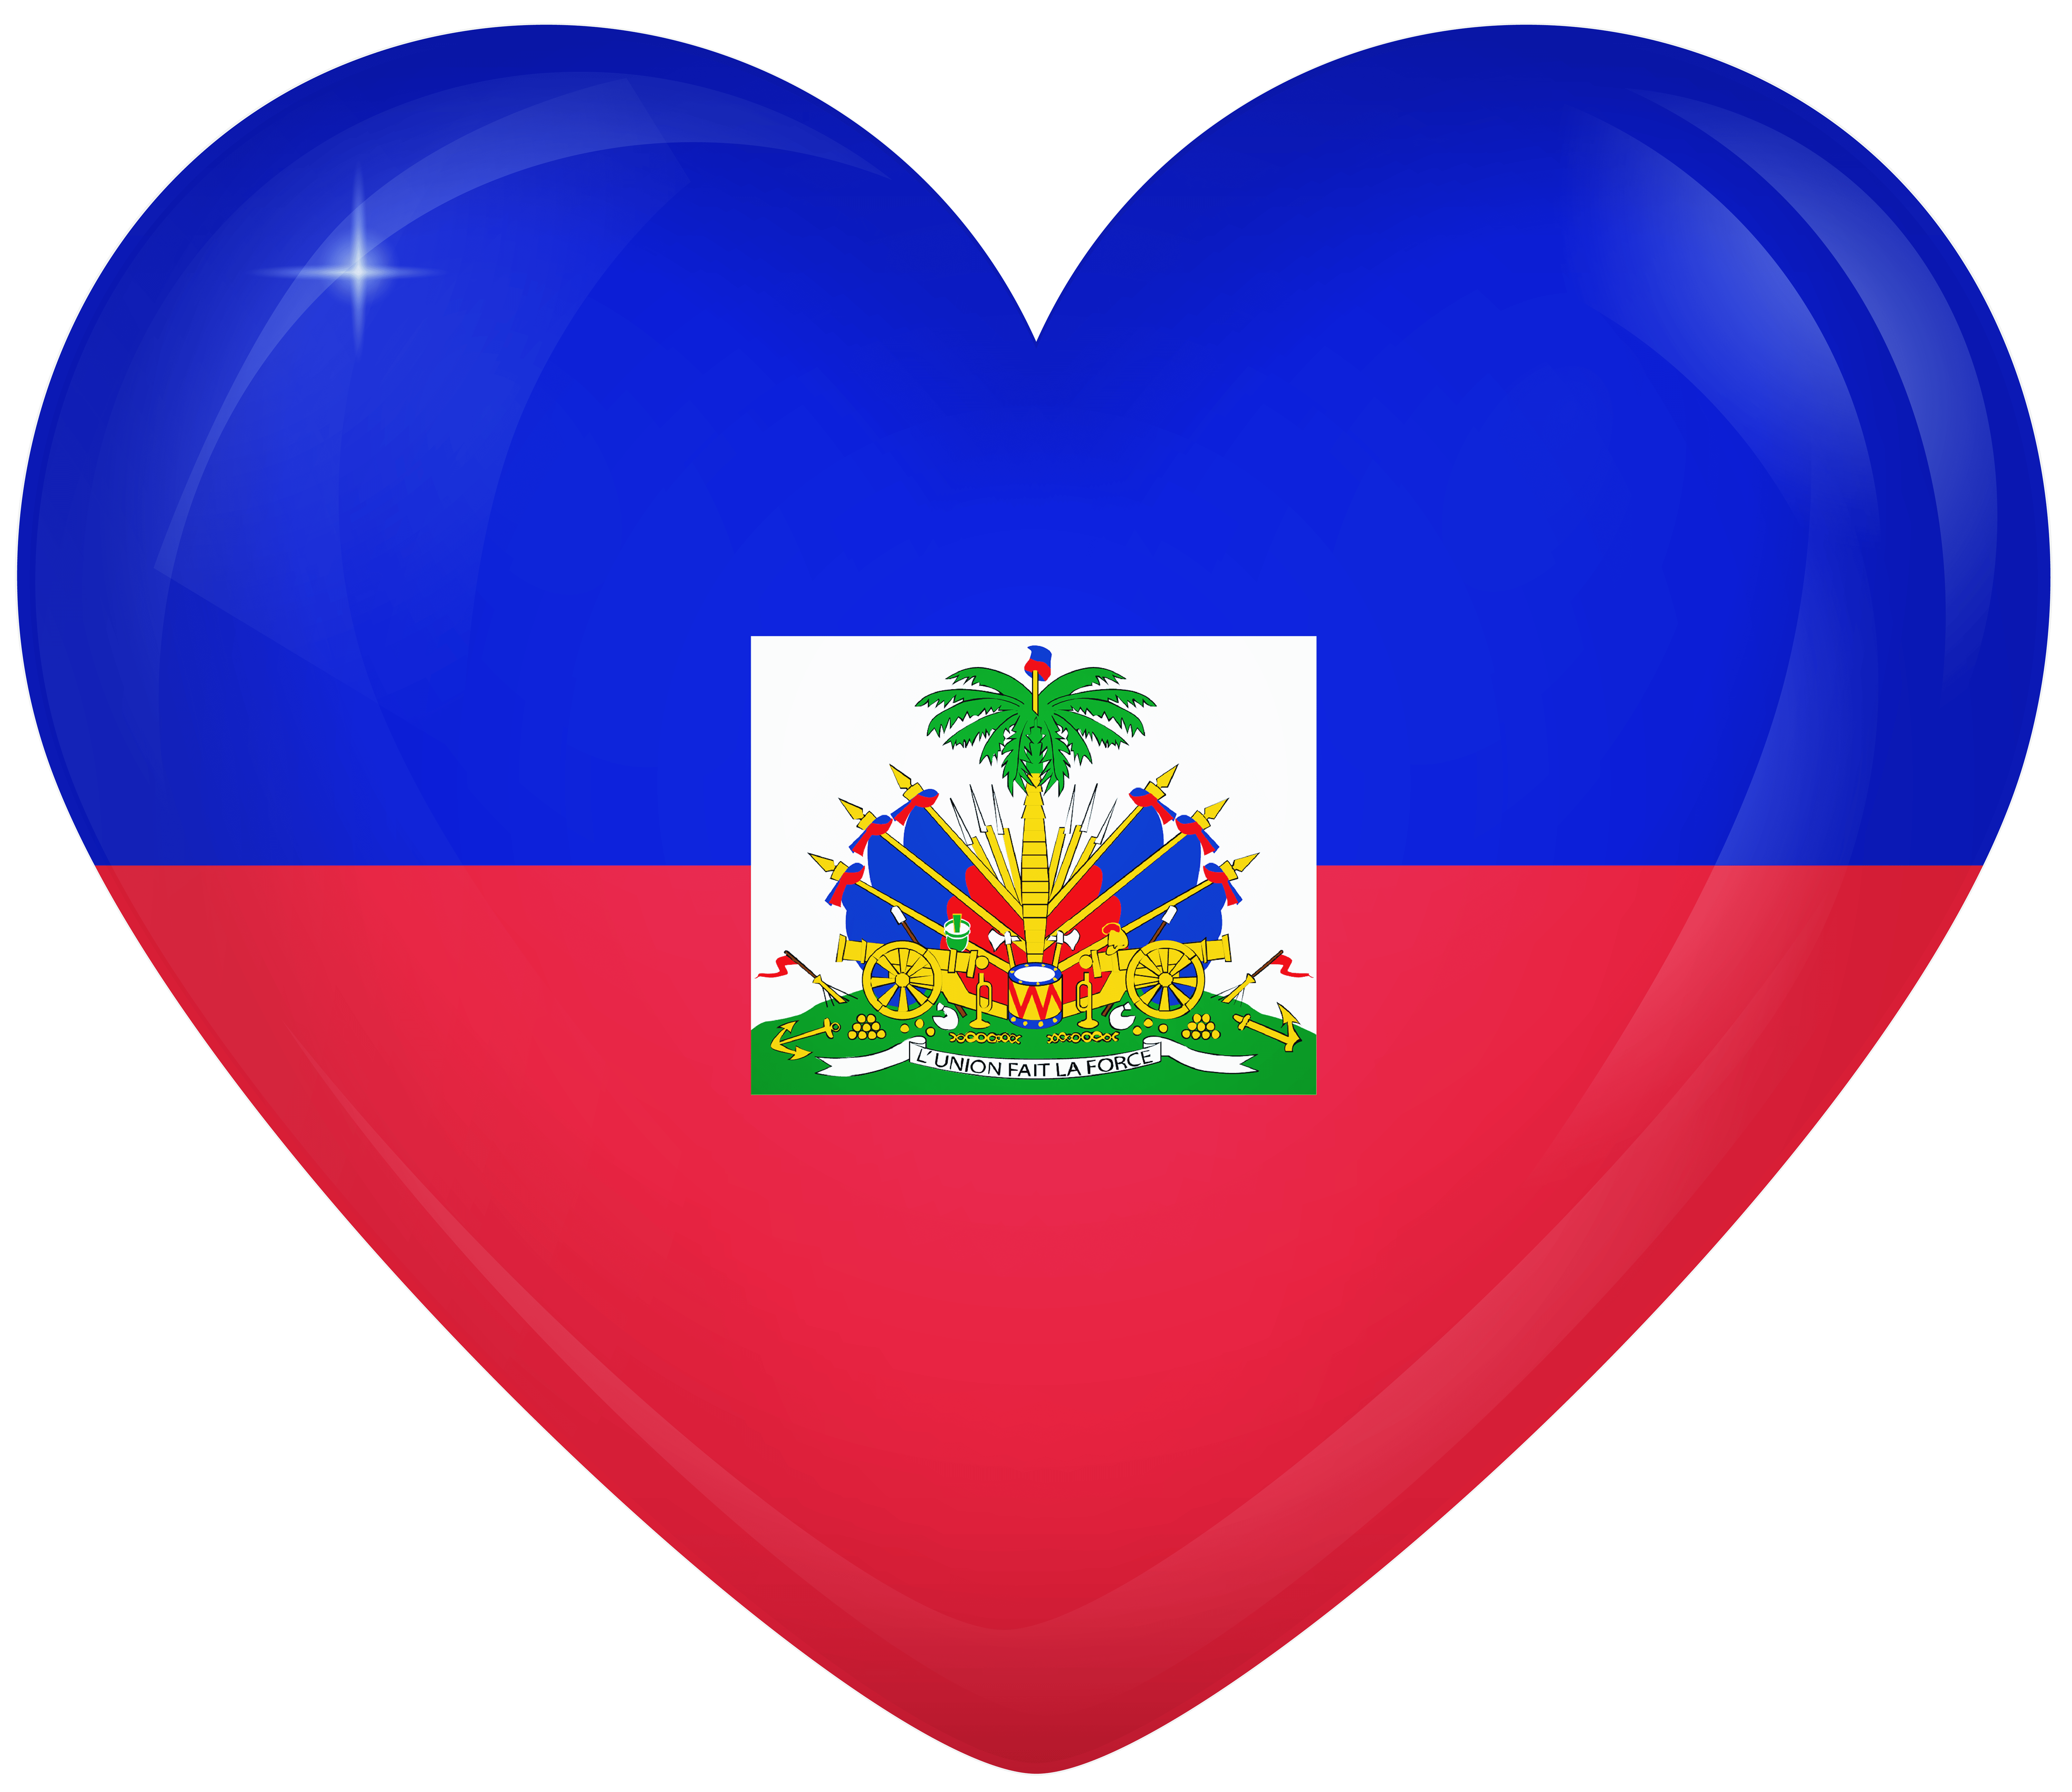 Haiti Large Heart Flag